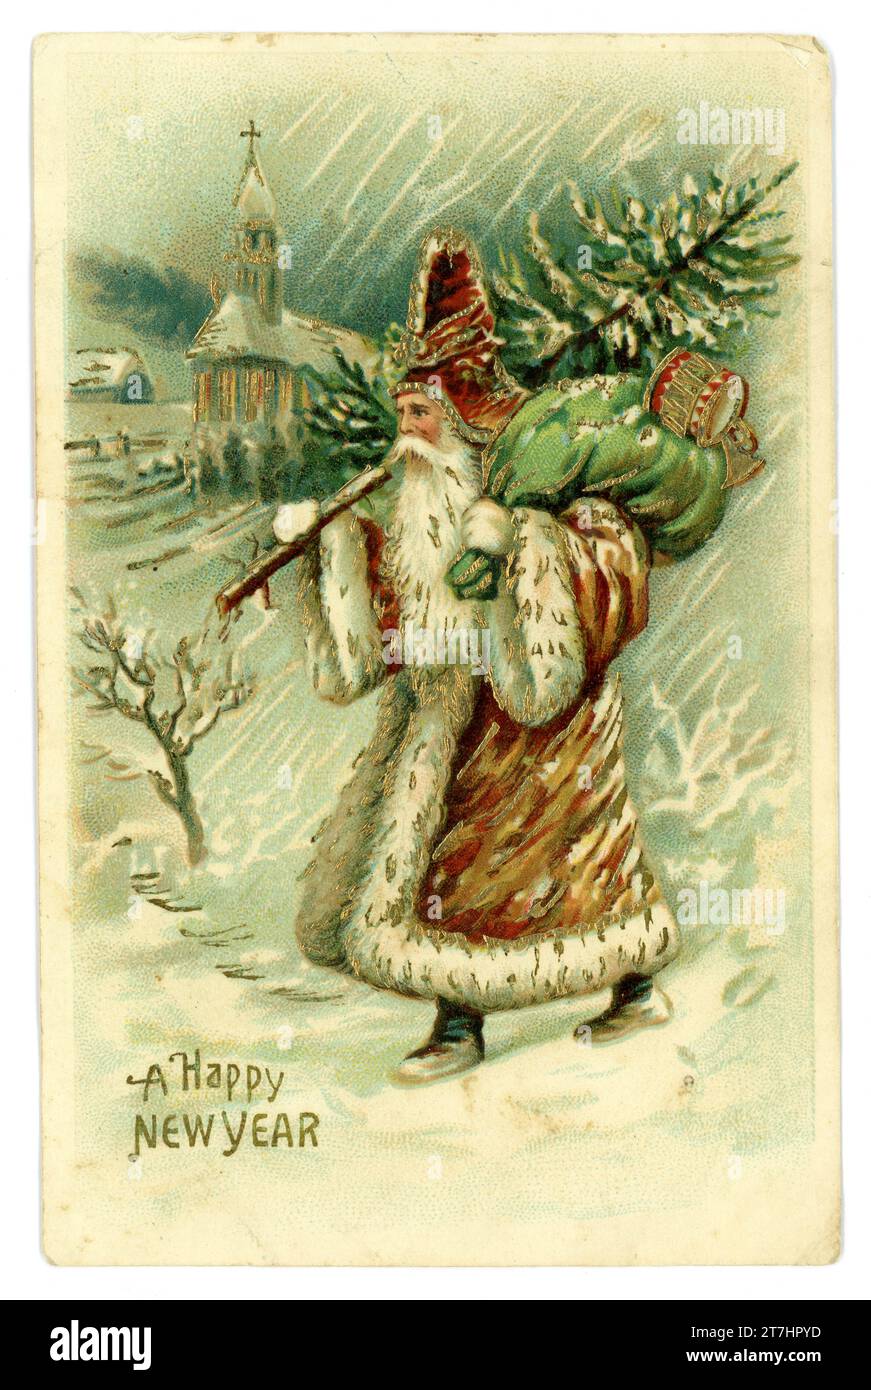 Originale Postkarte des frühen Stils der Weihnachtsmann trägt einen braunen Mantel, trägt einen grünen Sack, trägt Spielzeug und einen Baum im Schnee, ein glückliches neues Jahr ist eine Begrüßung. Pub von The Novelty Postcard Co. Liverpool. Um 1905 Stockfoto